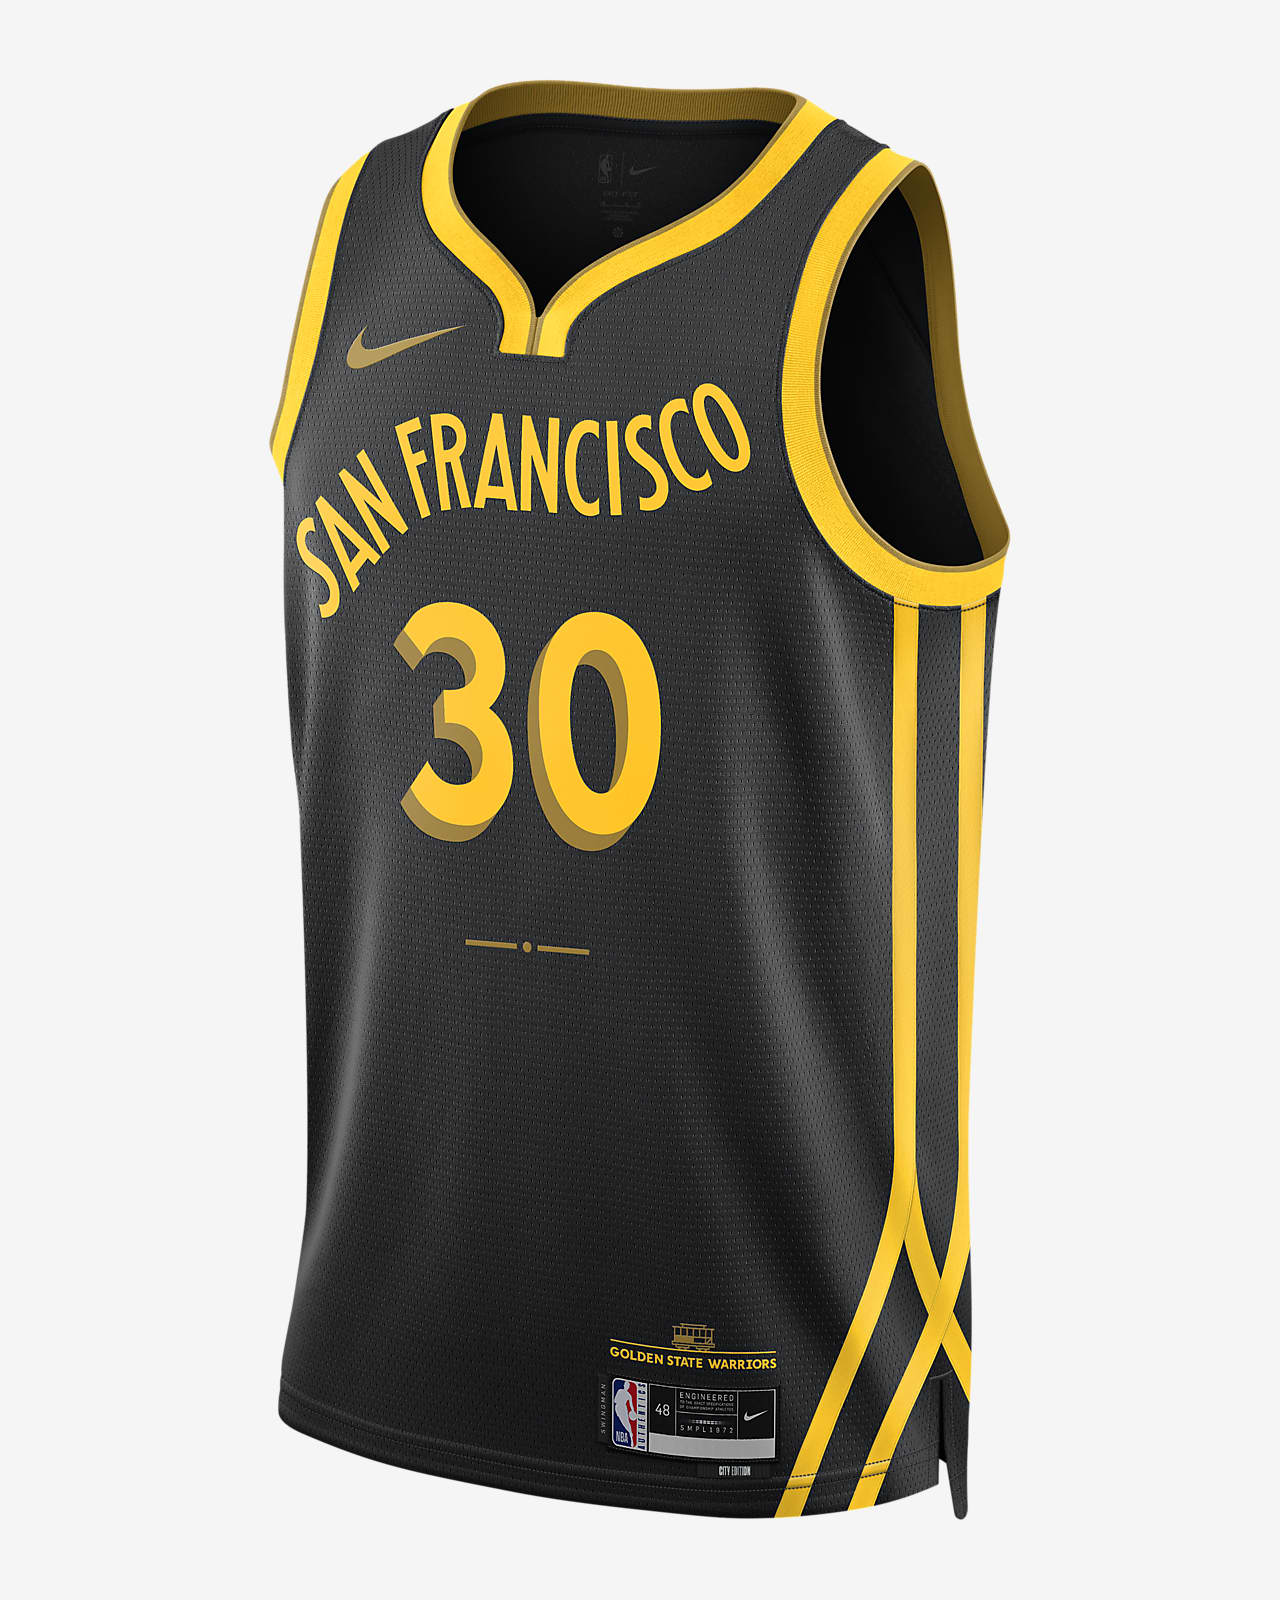 2023/24 赛季金州勇士队 (Stephen Curry) City Edition Nike Dri-FIT NBA Swingman Jersey 男子速干球衣